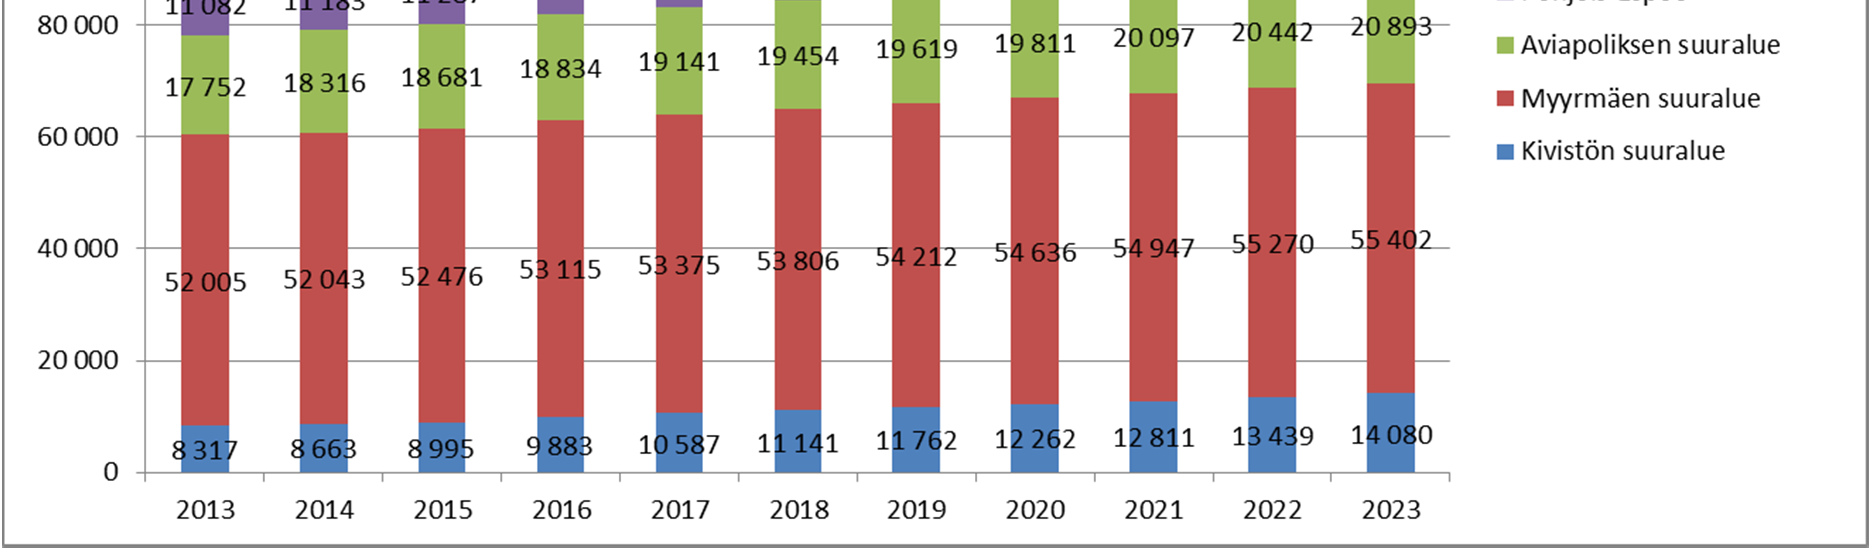 VÄESTÖKEHITYS Pääkaupunkiseudun kuntien virallisten väestöennusteiden ja Nurmijärven väestösuunnitteen mukaan Kivistön lähimarkkina-alueen väkimäärä nousee vuoden 2013 alun vajaasta 130.